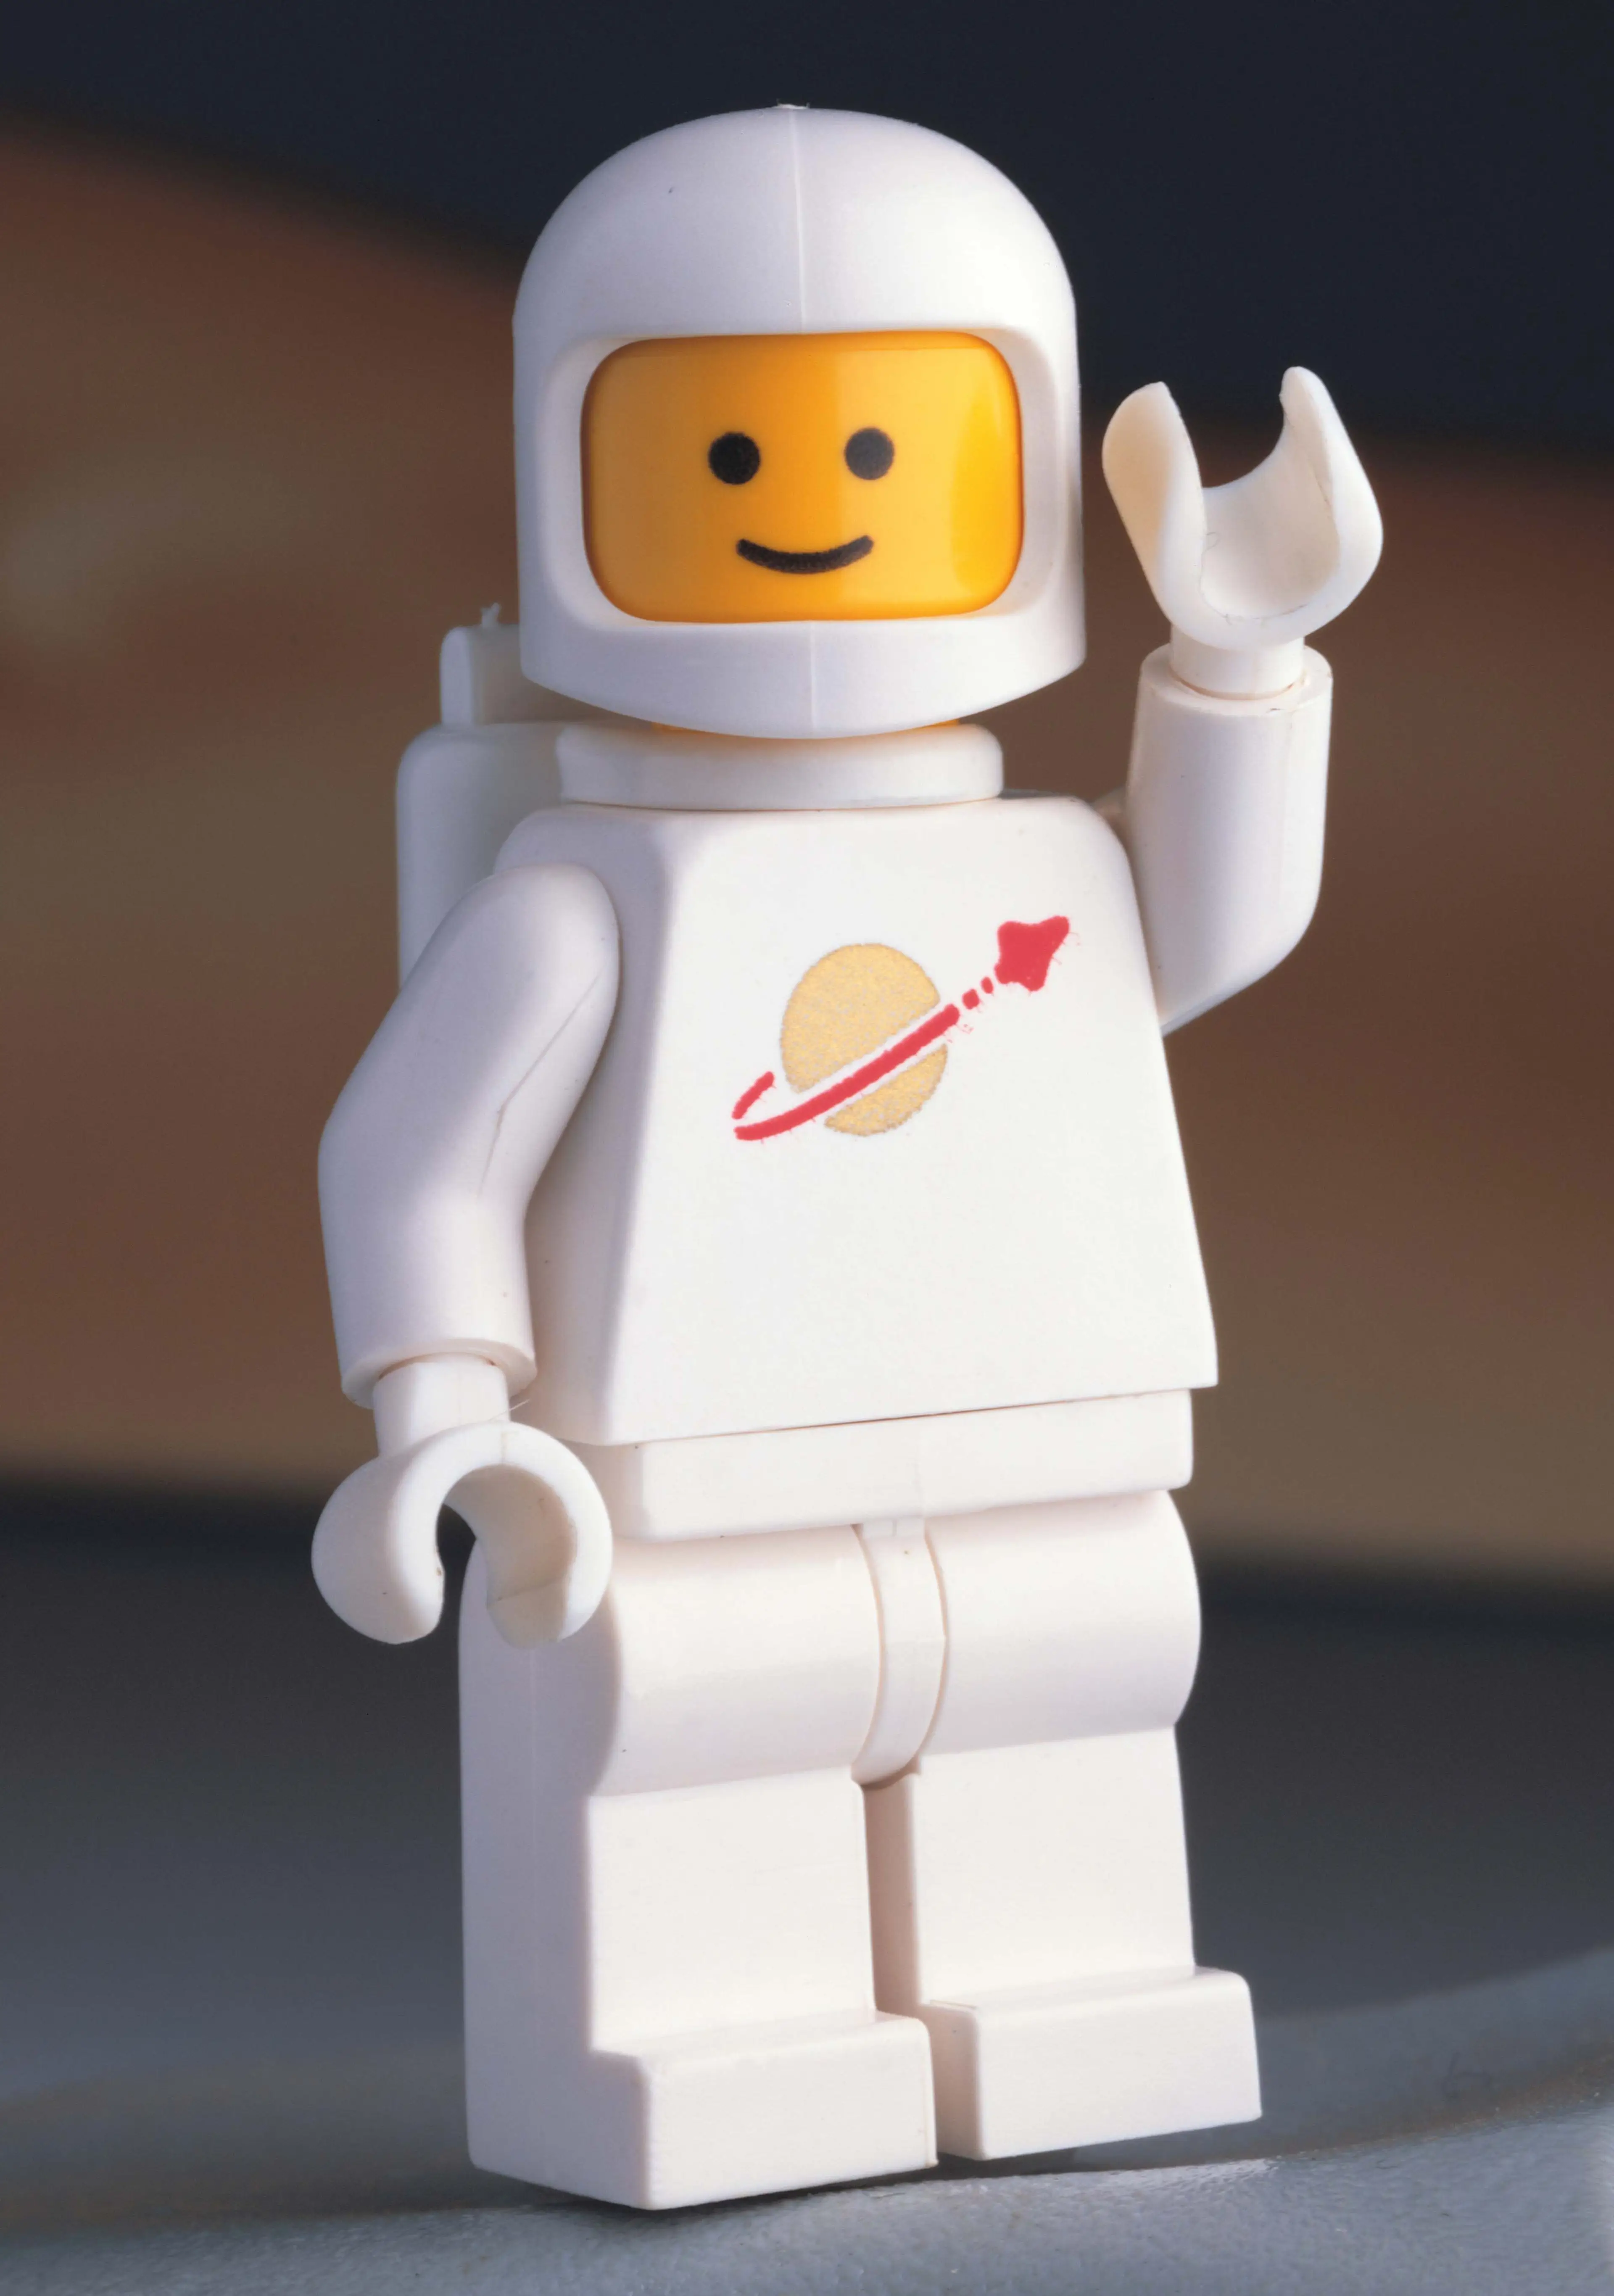 White LEGO Space minifigure